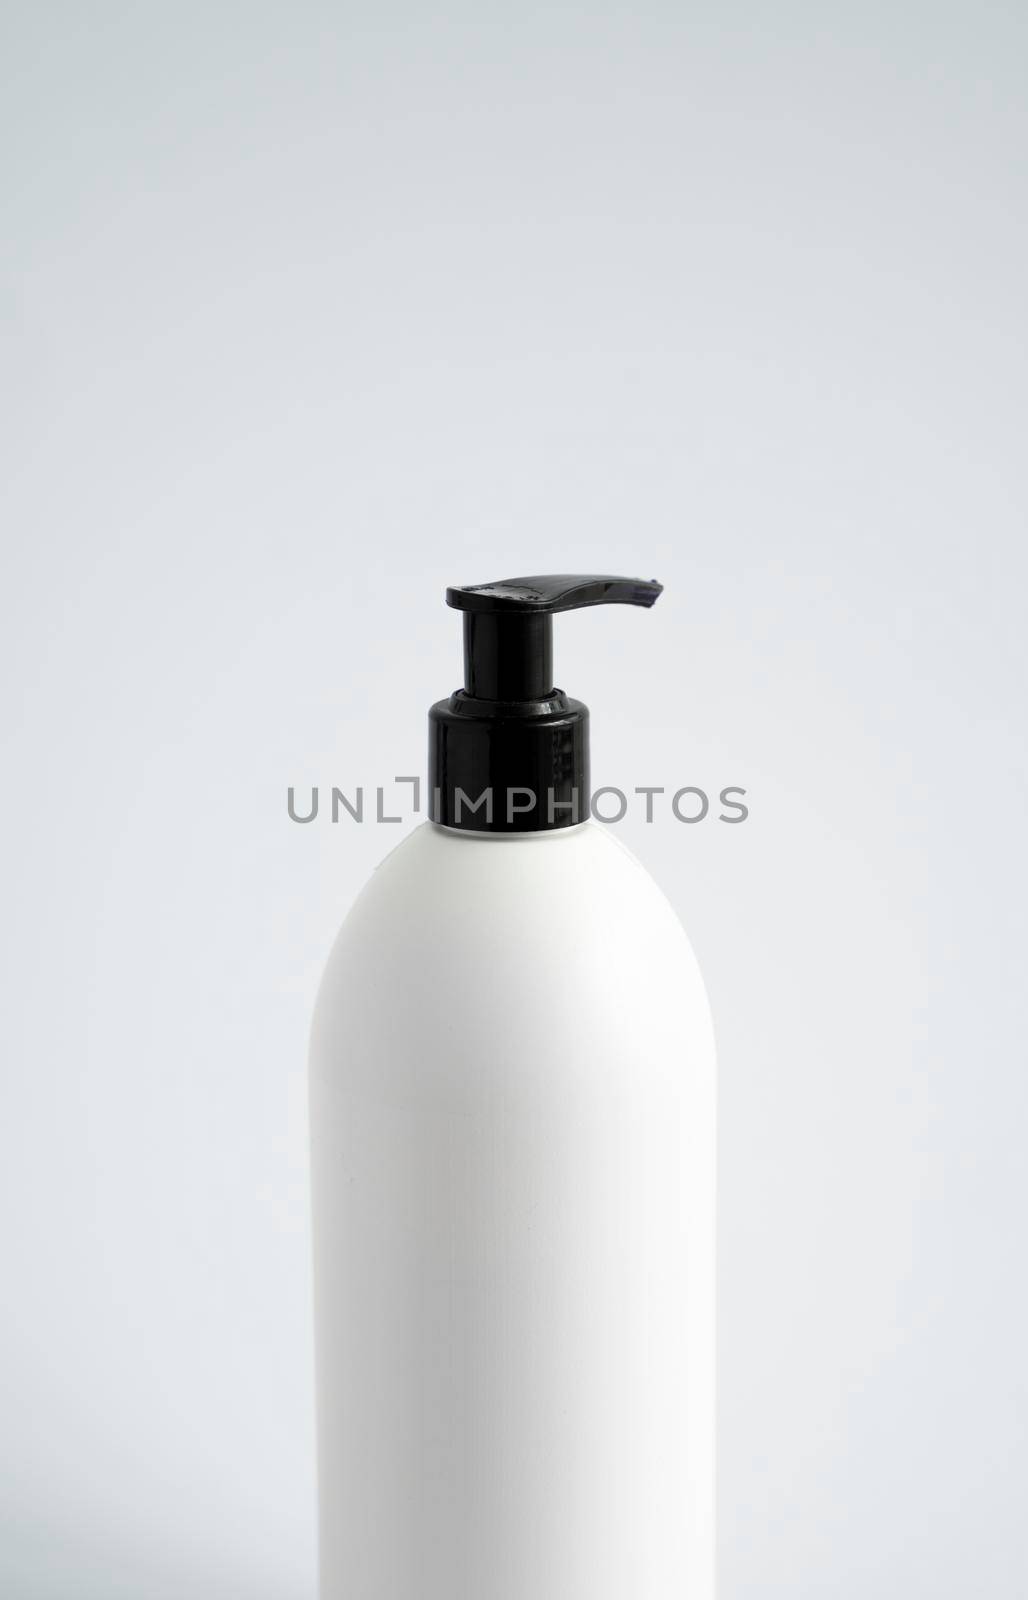 Plastic shampoo bottle. Mock up template for design